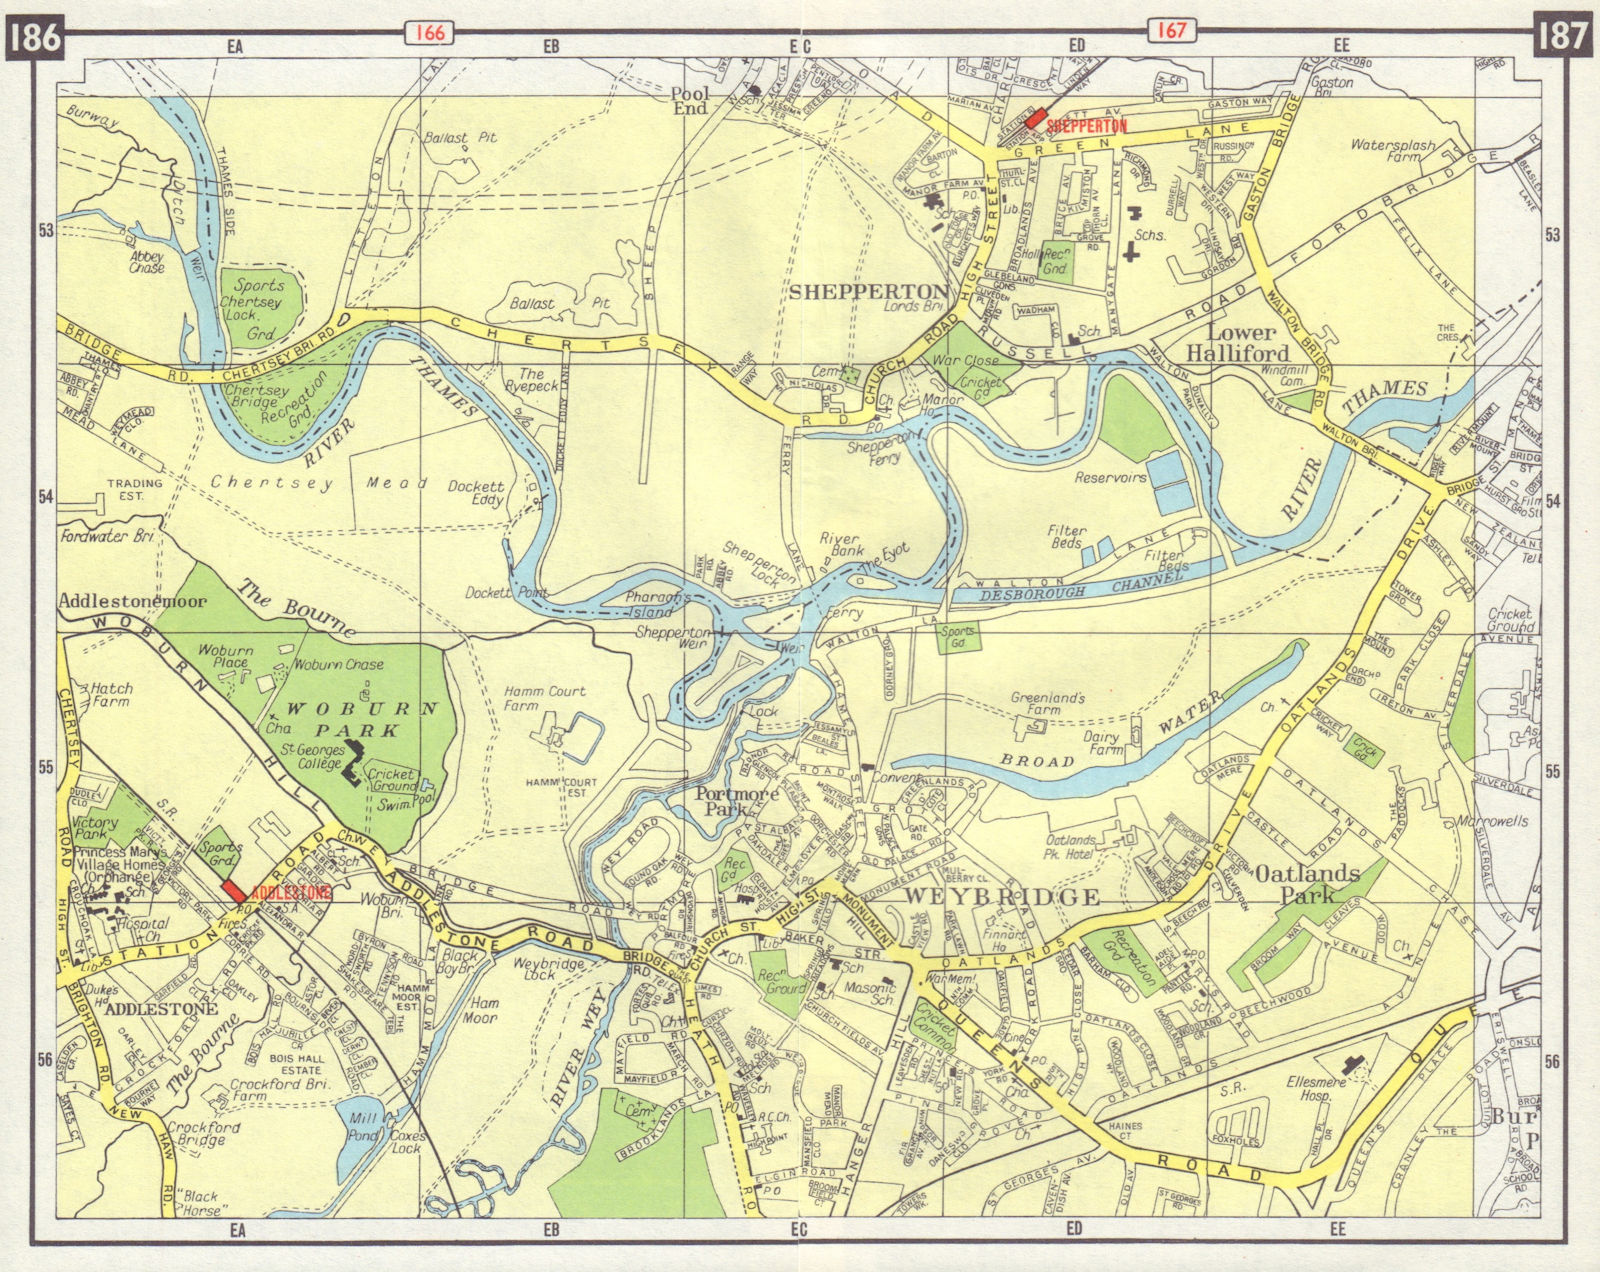 SW LONDON Weybridge Addlestone Shepperton Oatlands Park Lower Halliford 1965 map